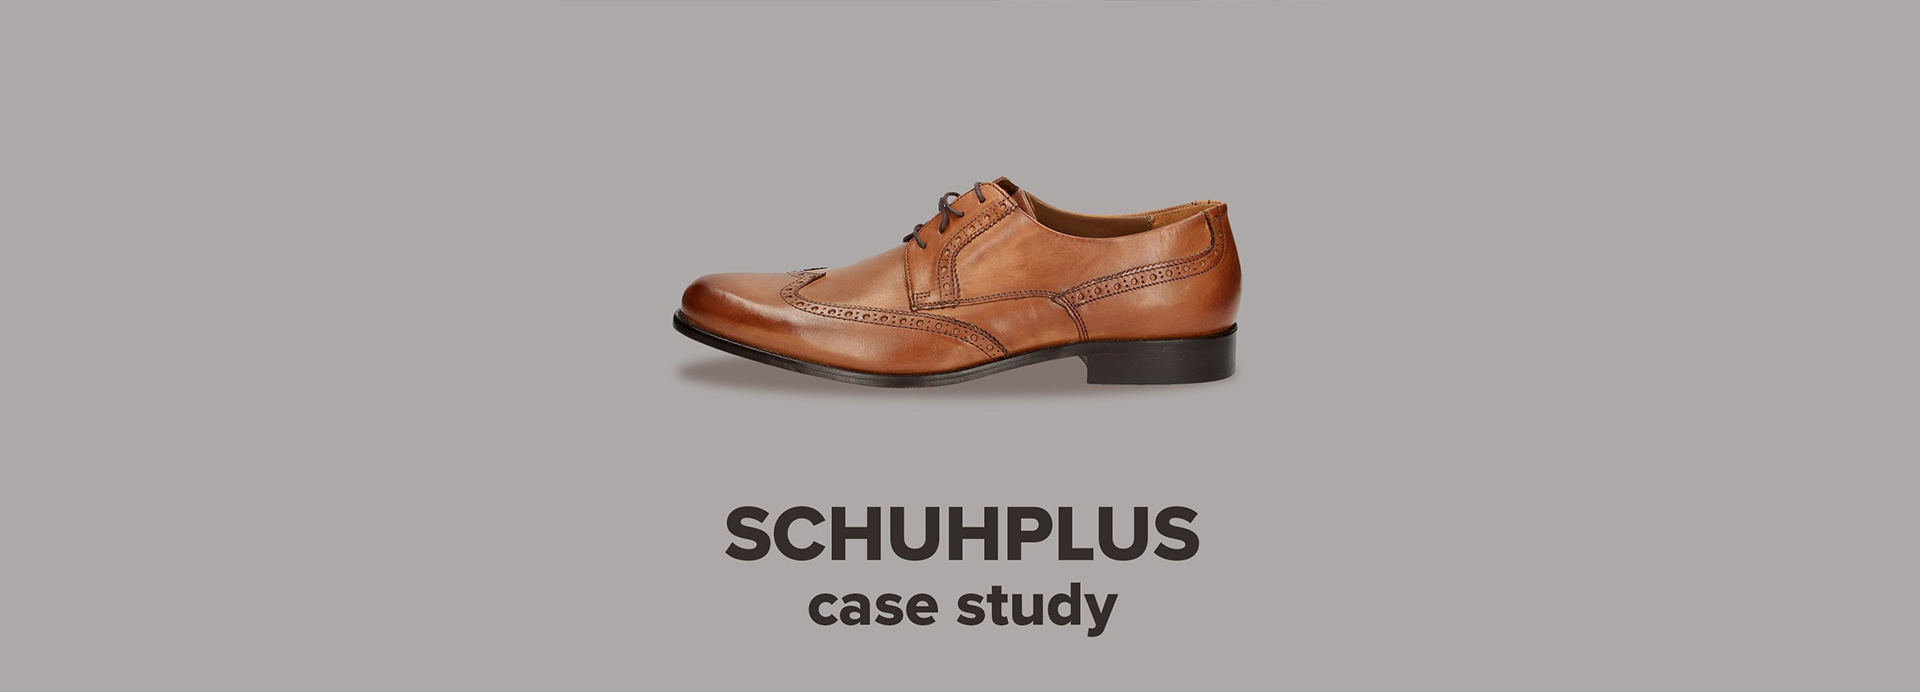 Shoe product image